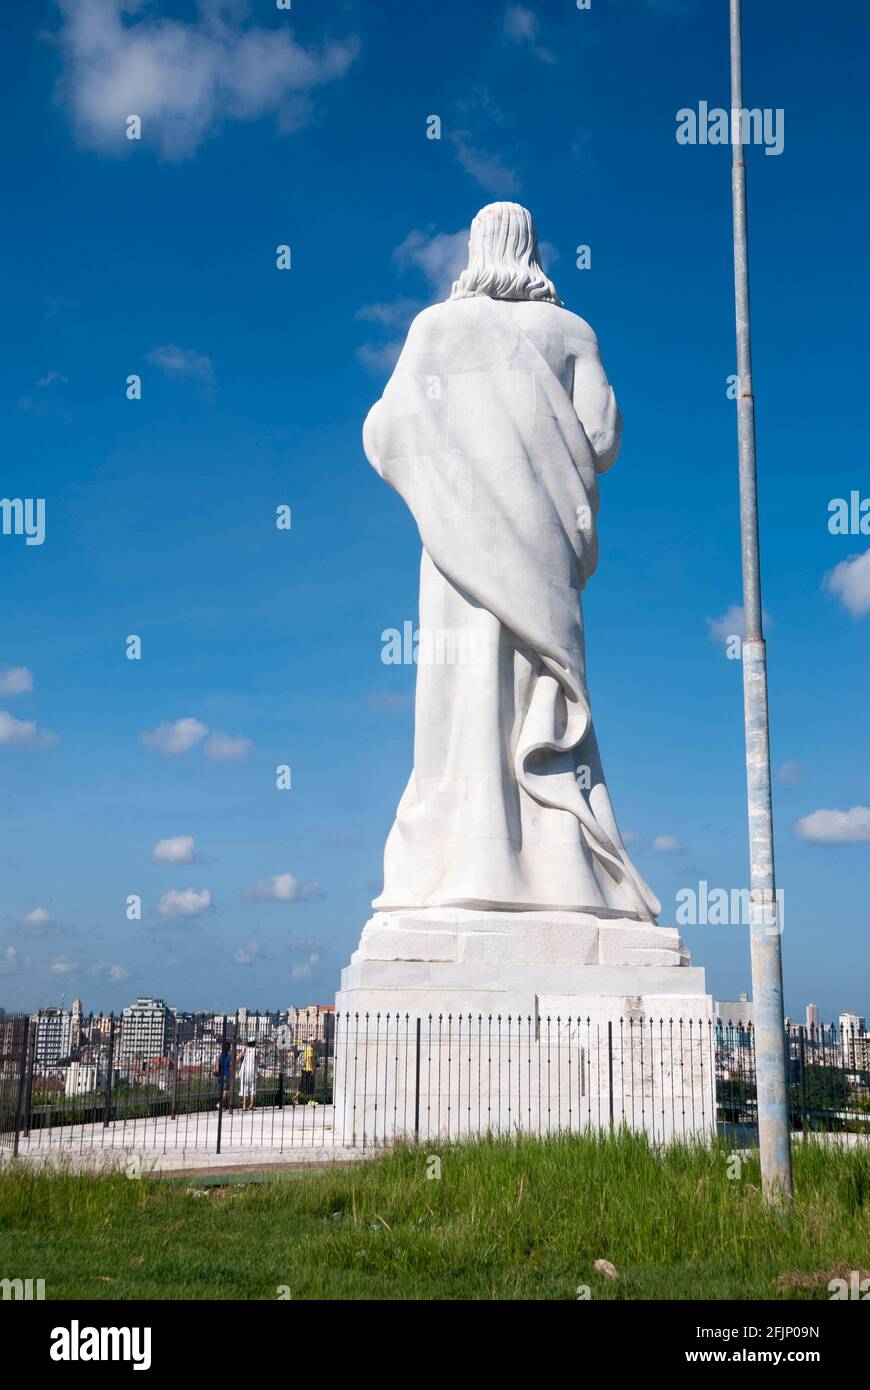 Il Cristo dell'Avana è una grande scultura che rappresenta Gesù di Nazaret su una collina che domina la baia di l'Avana, Cuba Foto Stock